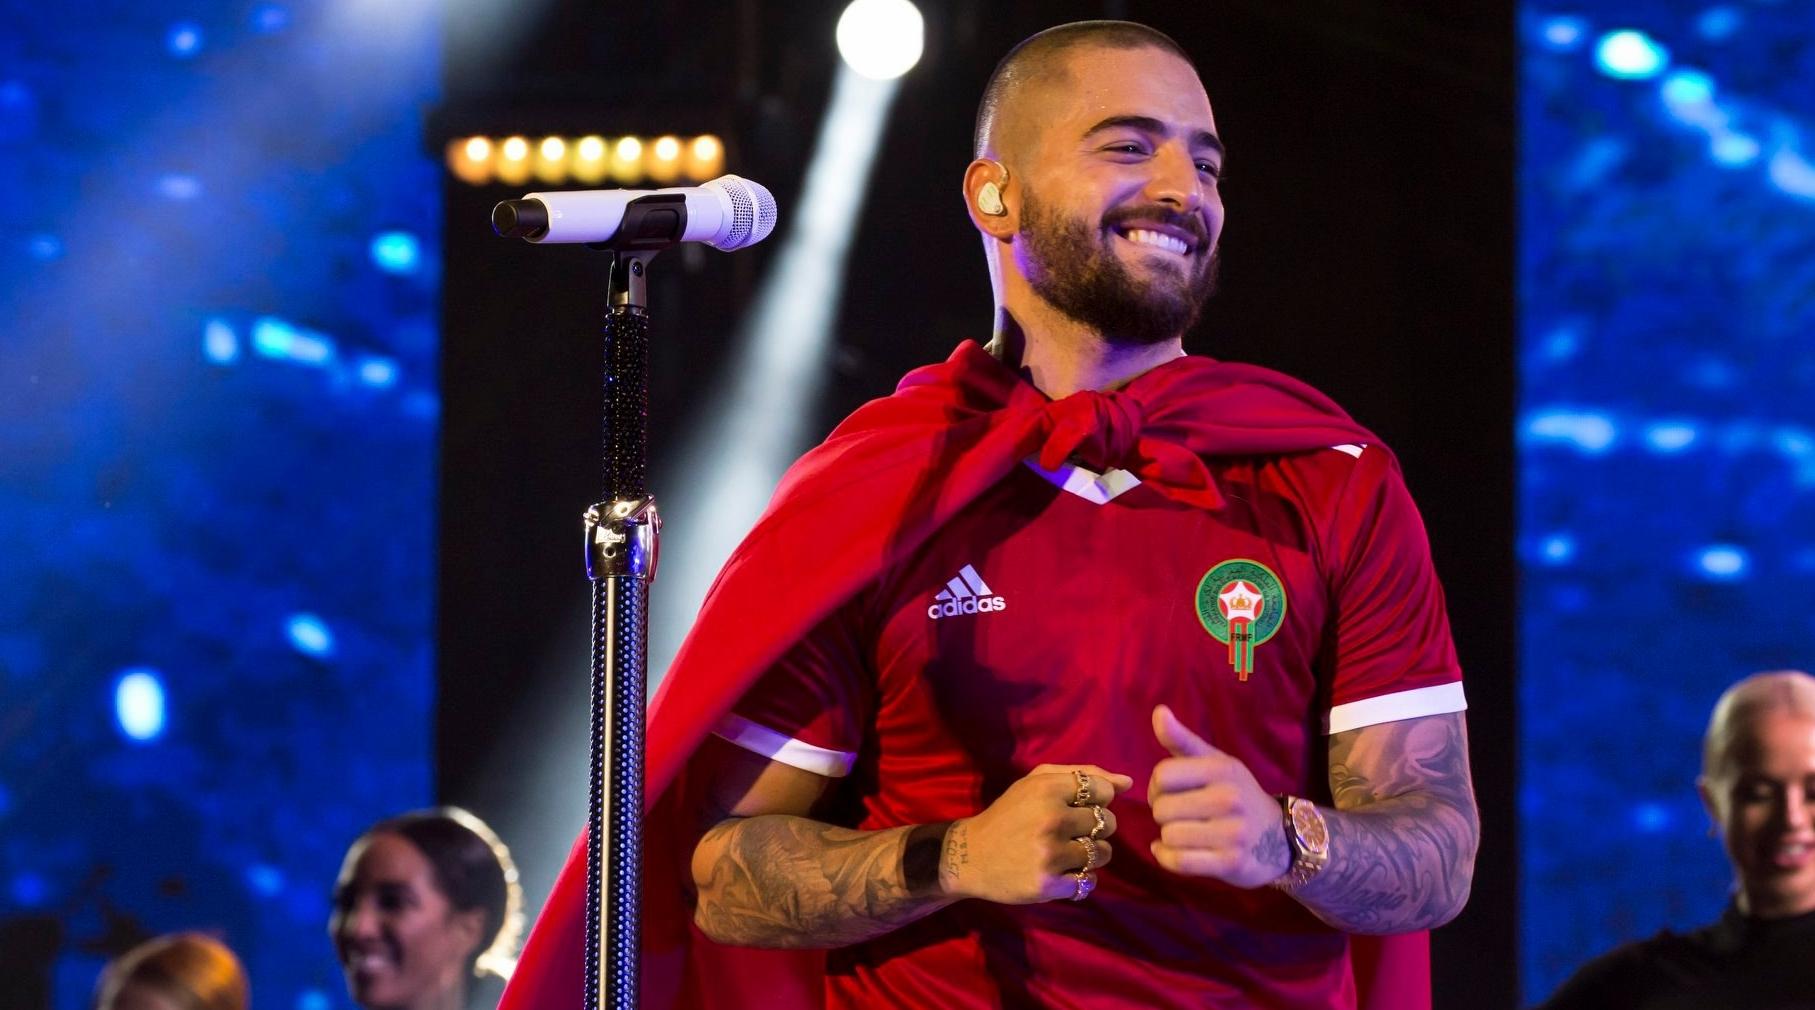 مغني أجنبي مشهور يلغي حفله بالمغرب والسبب أحداث مليلية